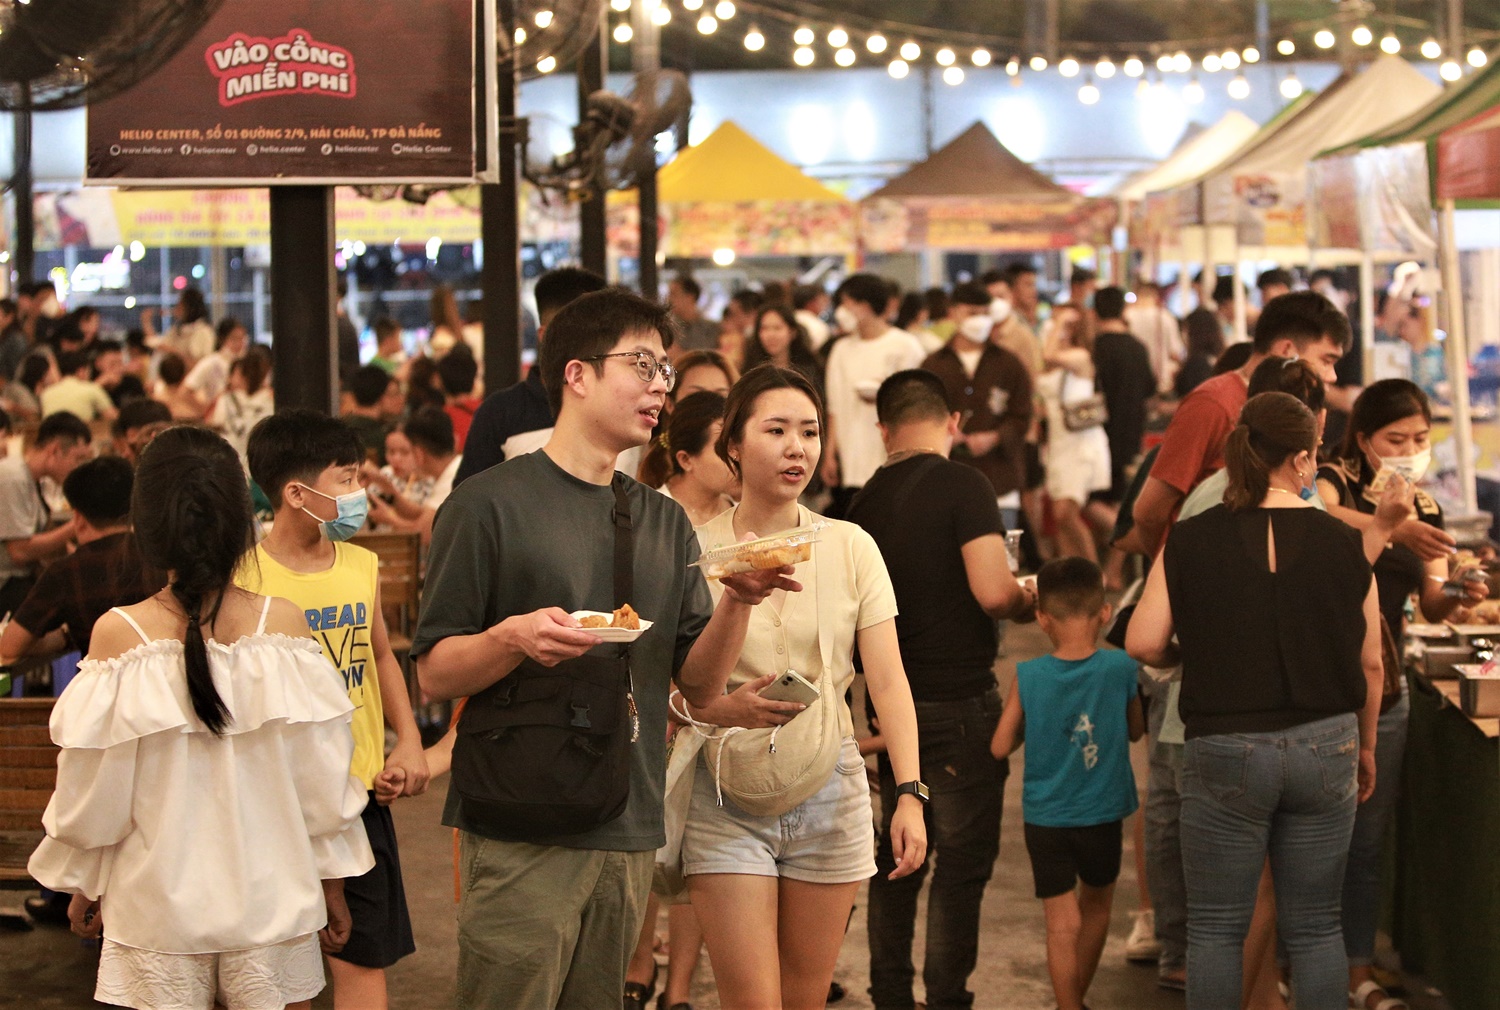 Hàng nghìn người chen chân xem múa lân, chợ đêm Đà Nẵng ken kín lối - Ảnh 16.